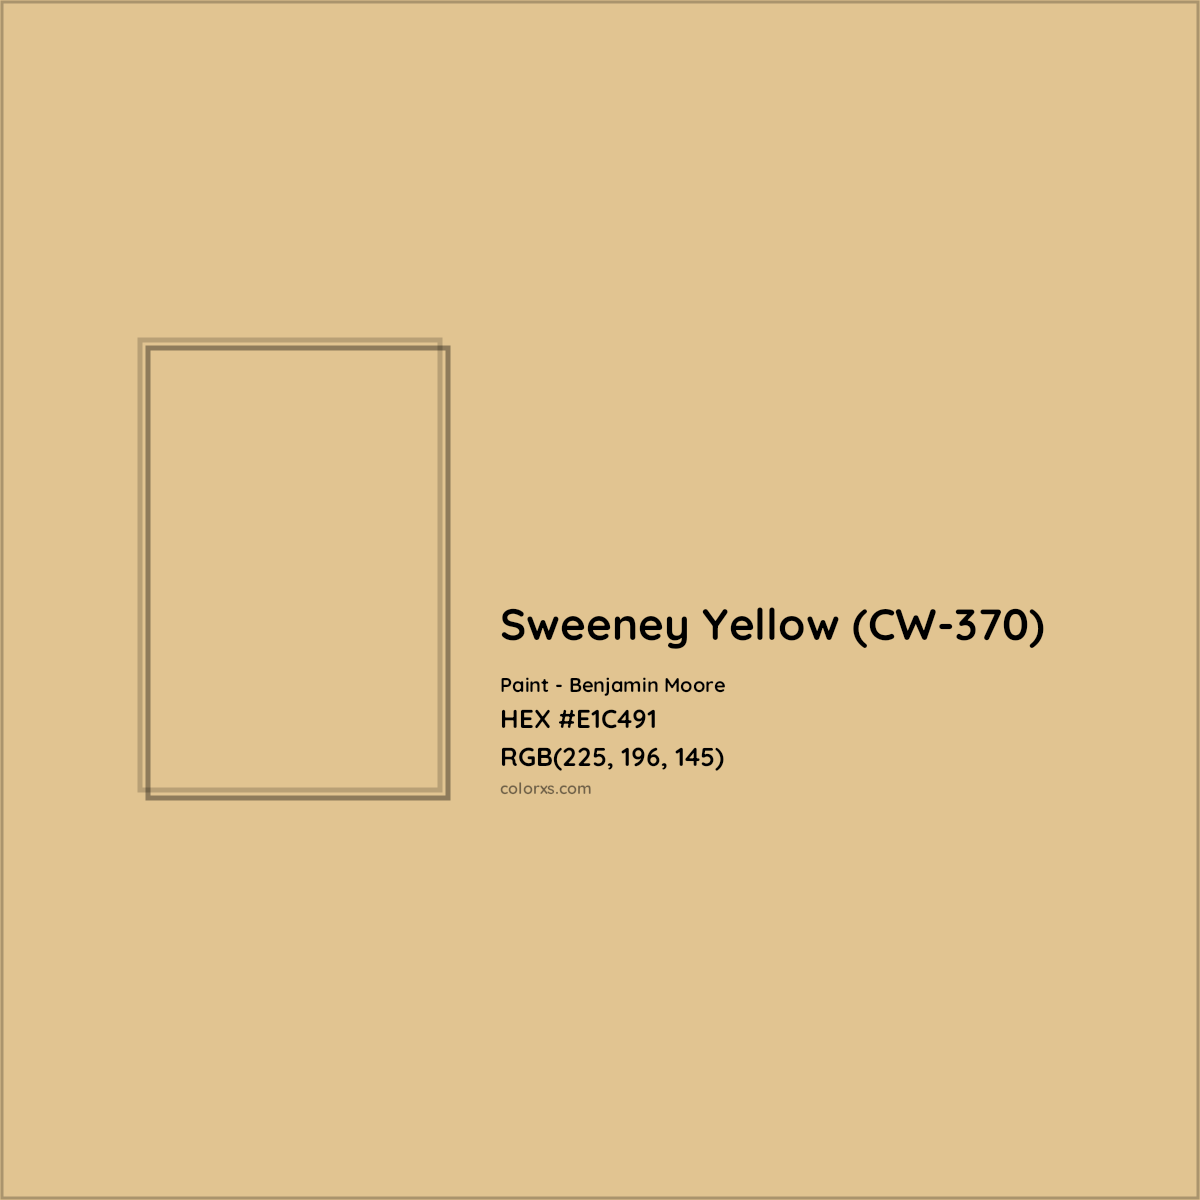 HEX #E1C491 Sweeney Yellow (CW-370) Paint Benjamin Moore - Color Code